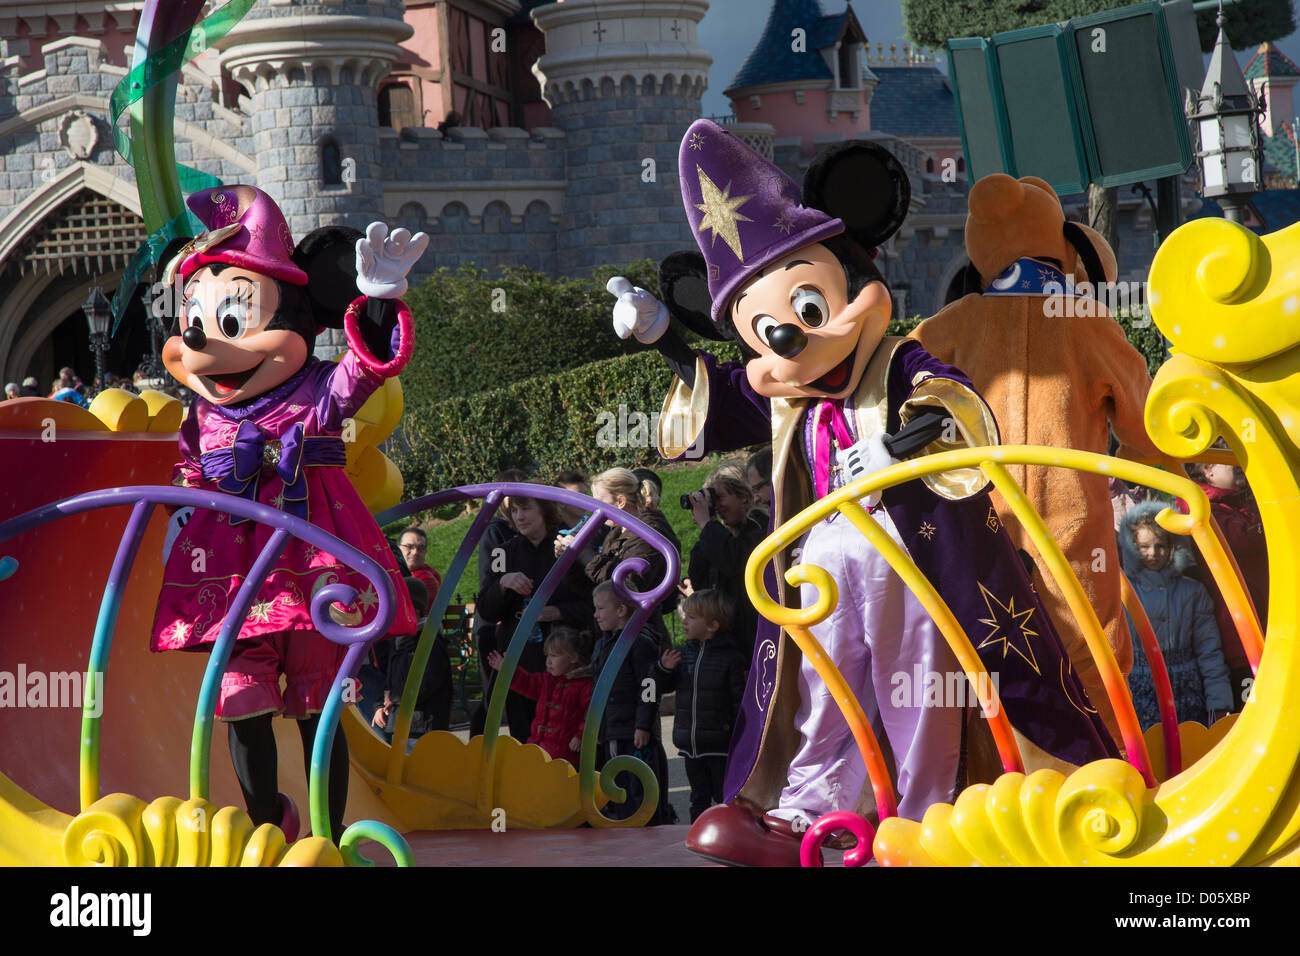 Disneyland-Parade mit Mickey und Minnie Maus auf einem Float, Disneyland Paris (Disneyland) Stockfoto